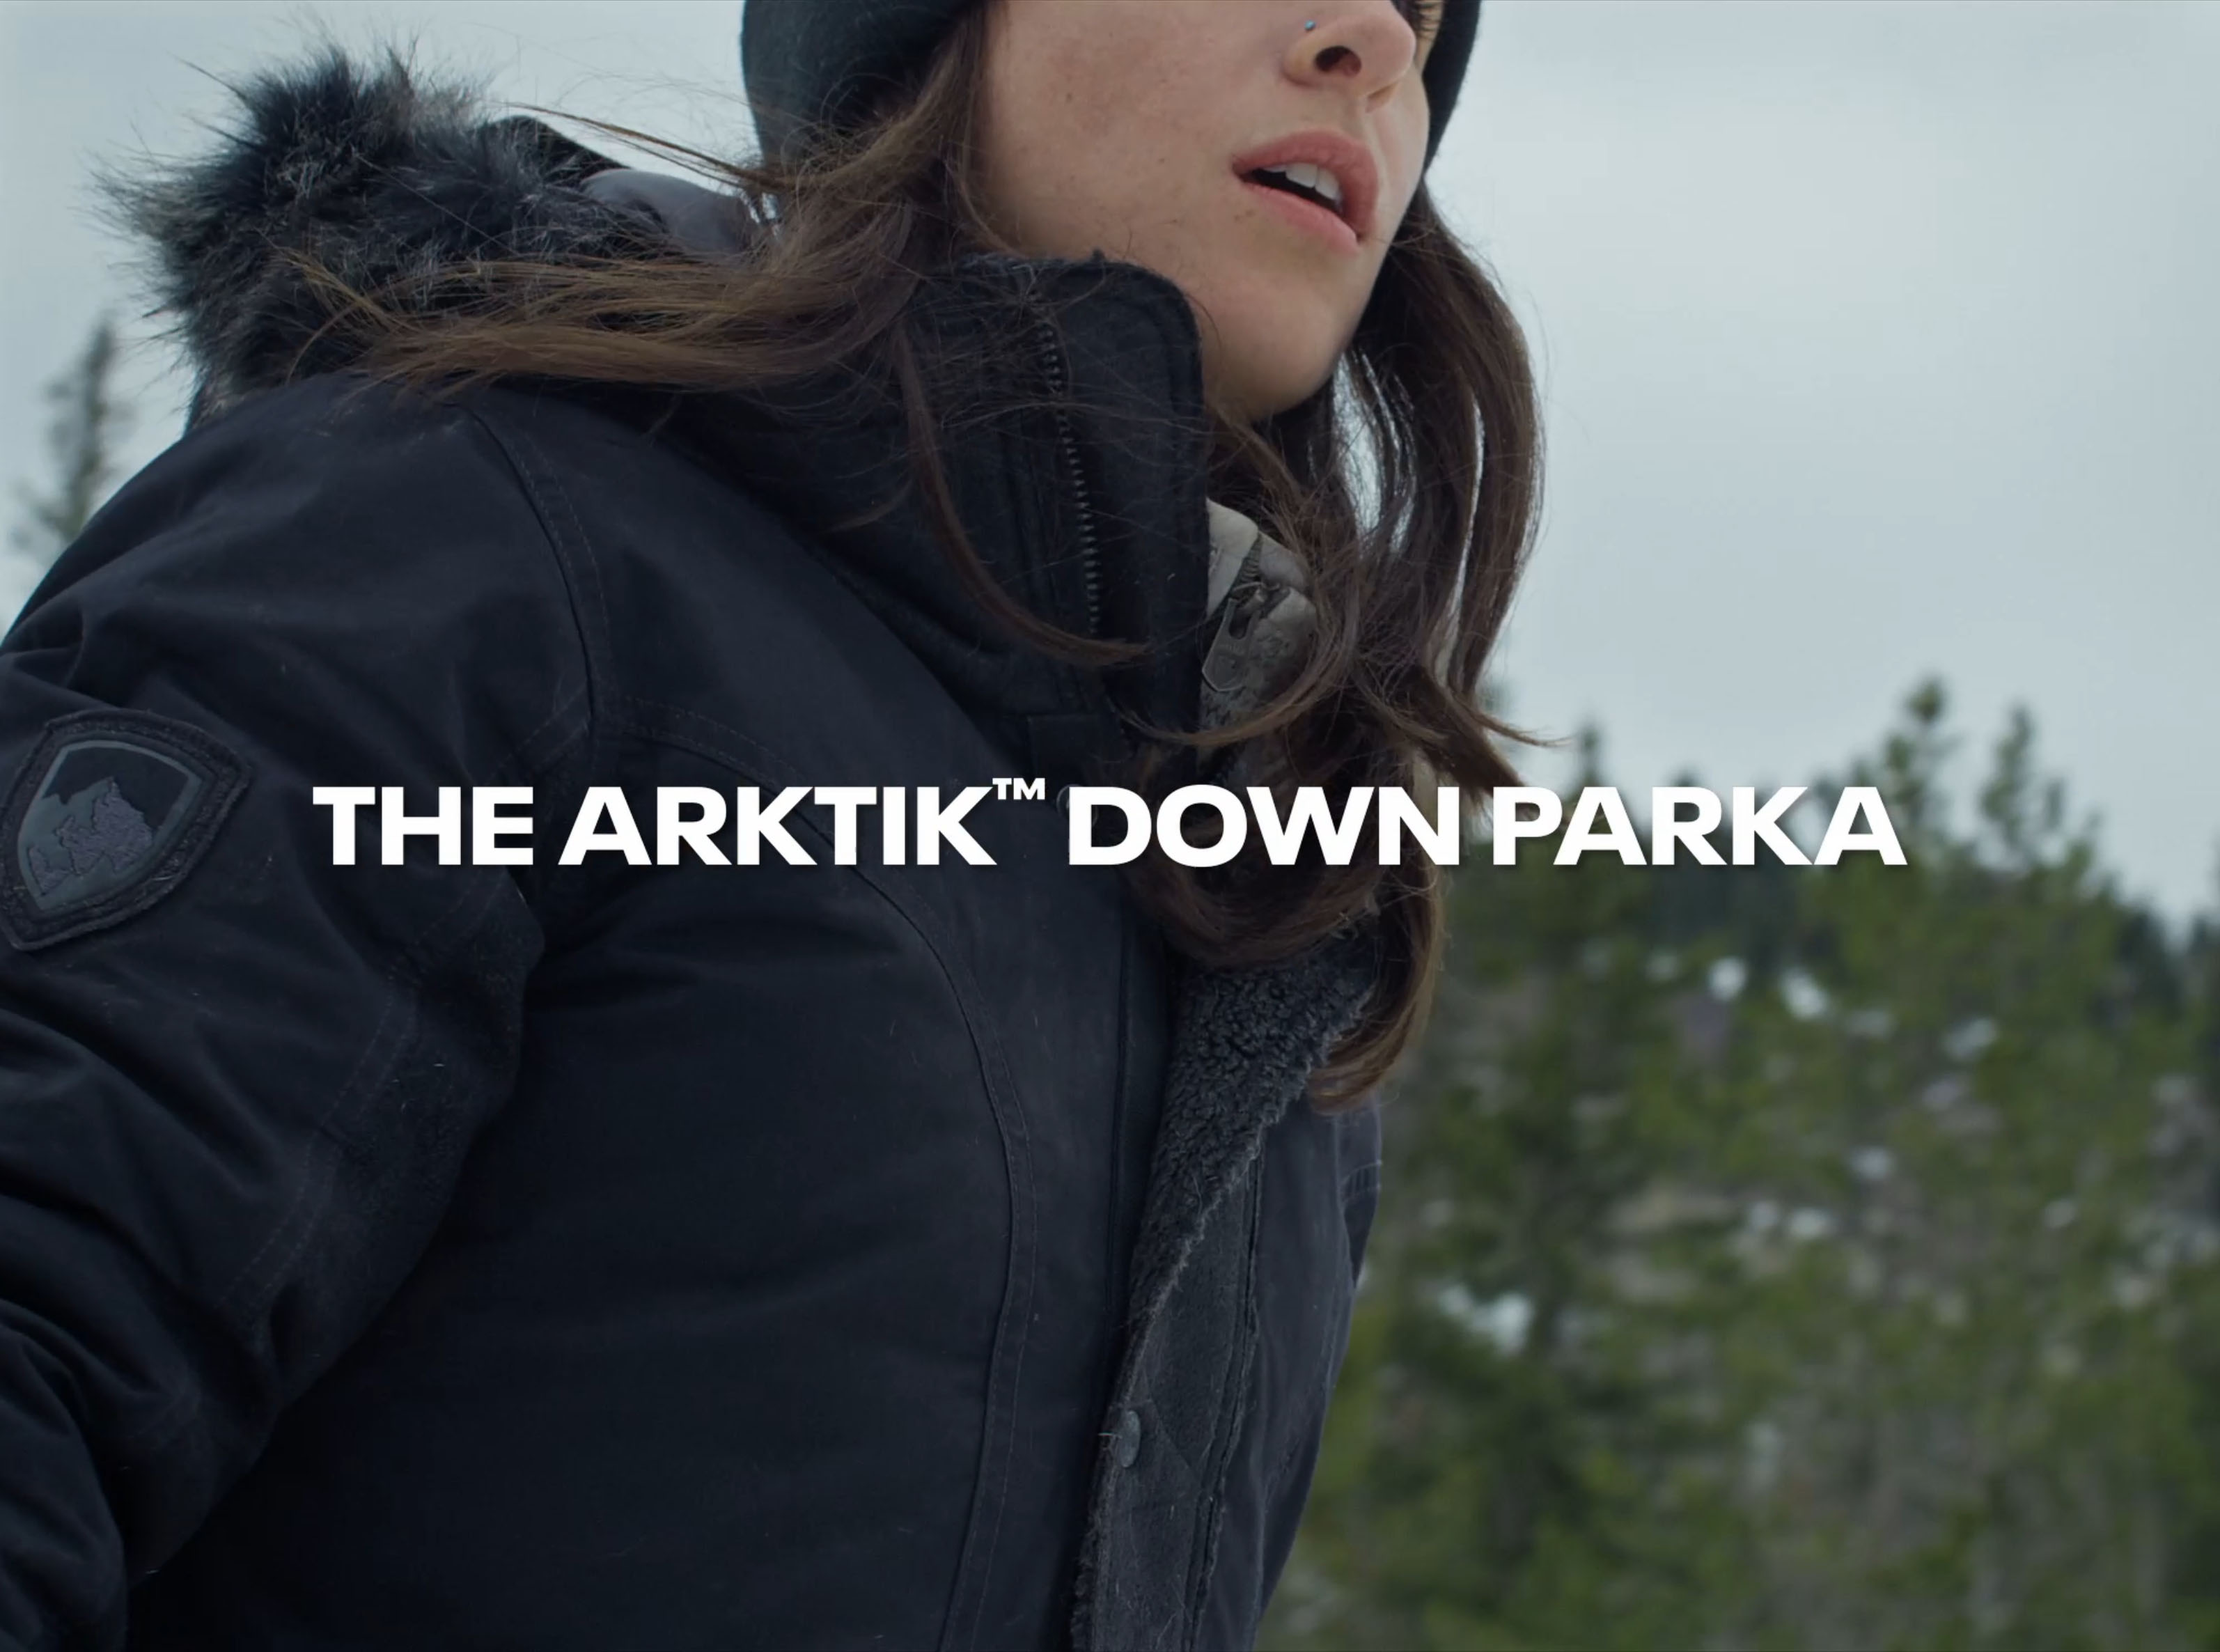 Kuhl Arktik Jacket - Women's, Everyday Rain Jackets